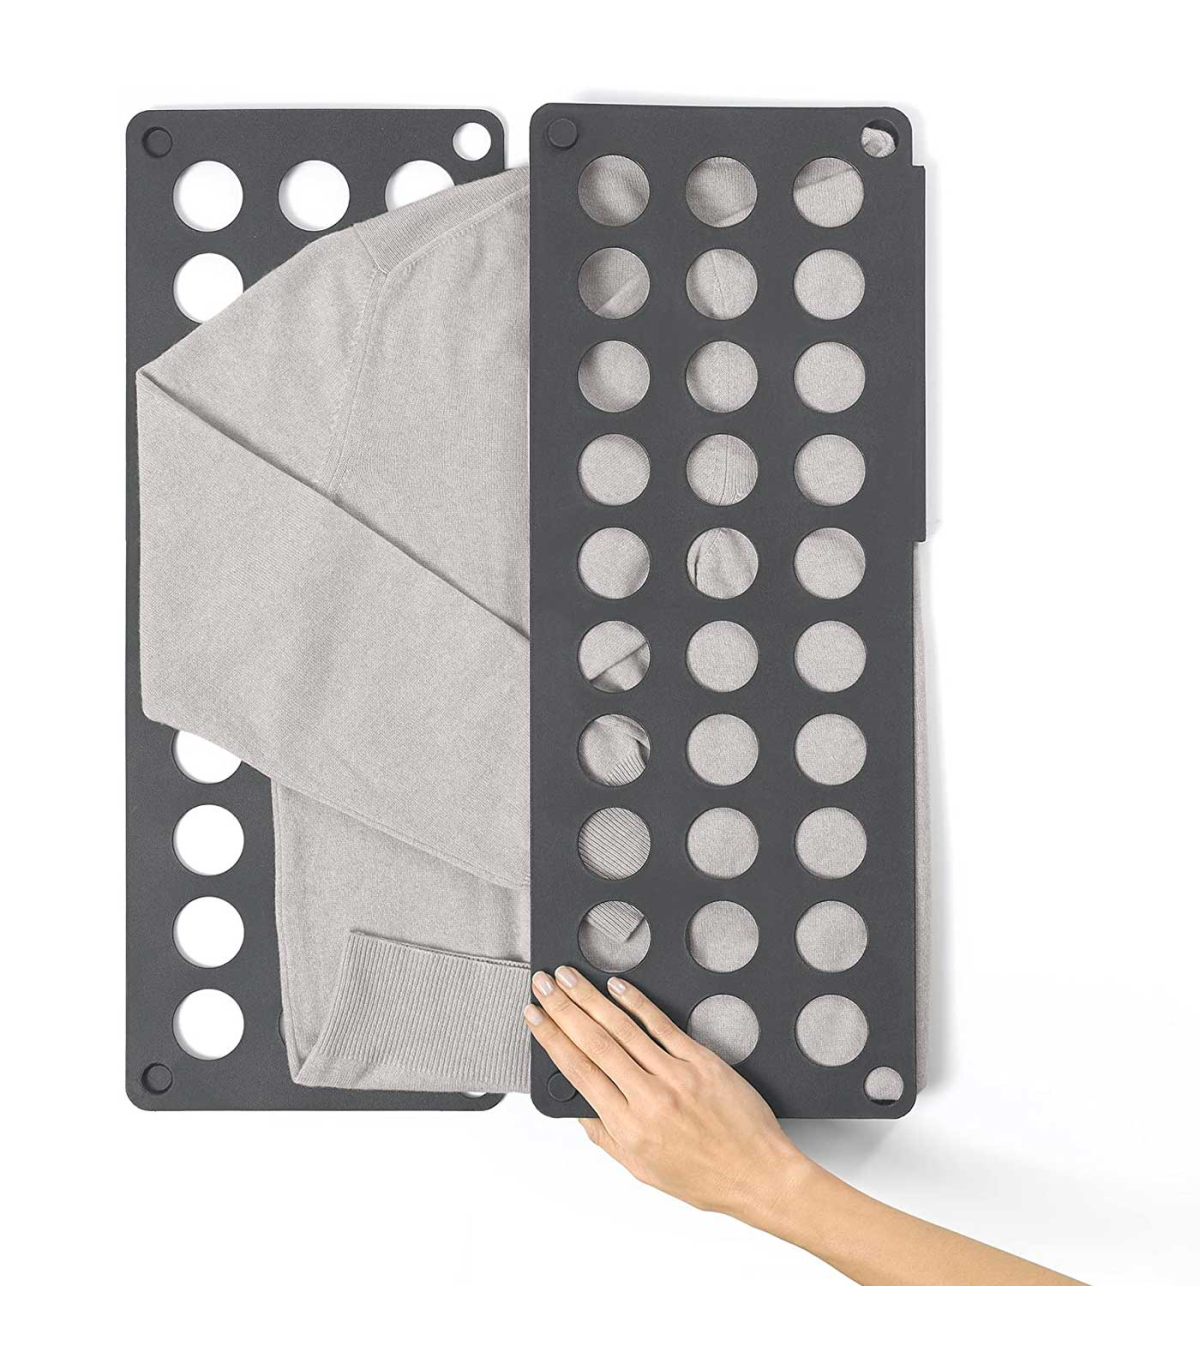 Doblador de ropa de plástico, tabla plegable para doblar prendas